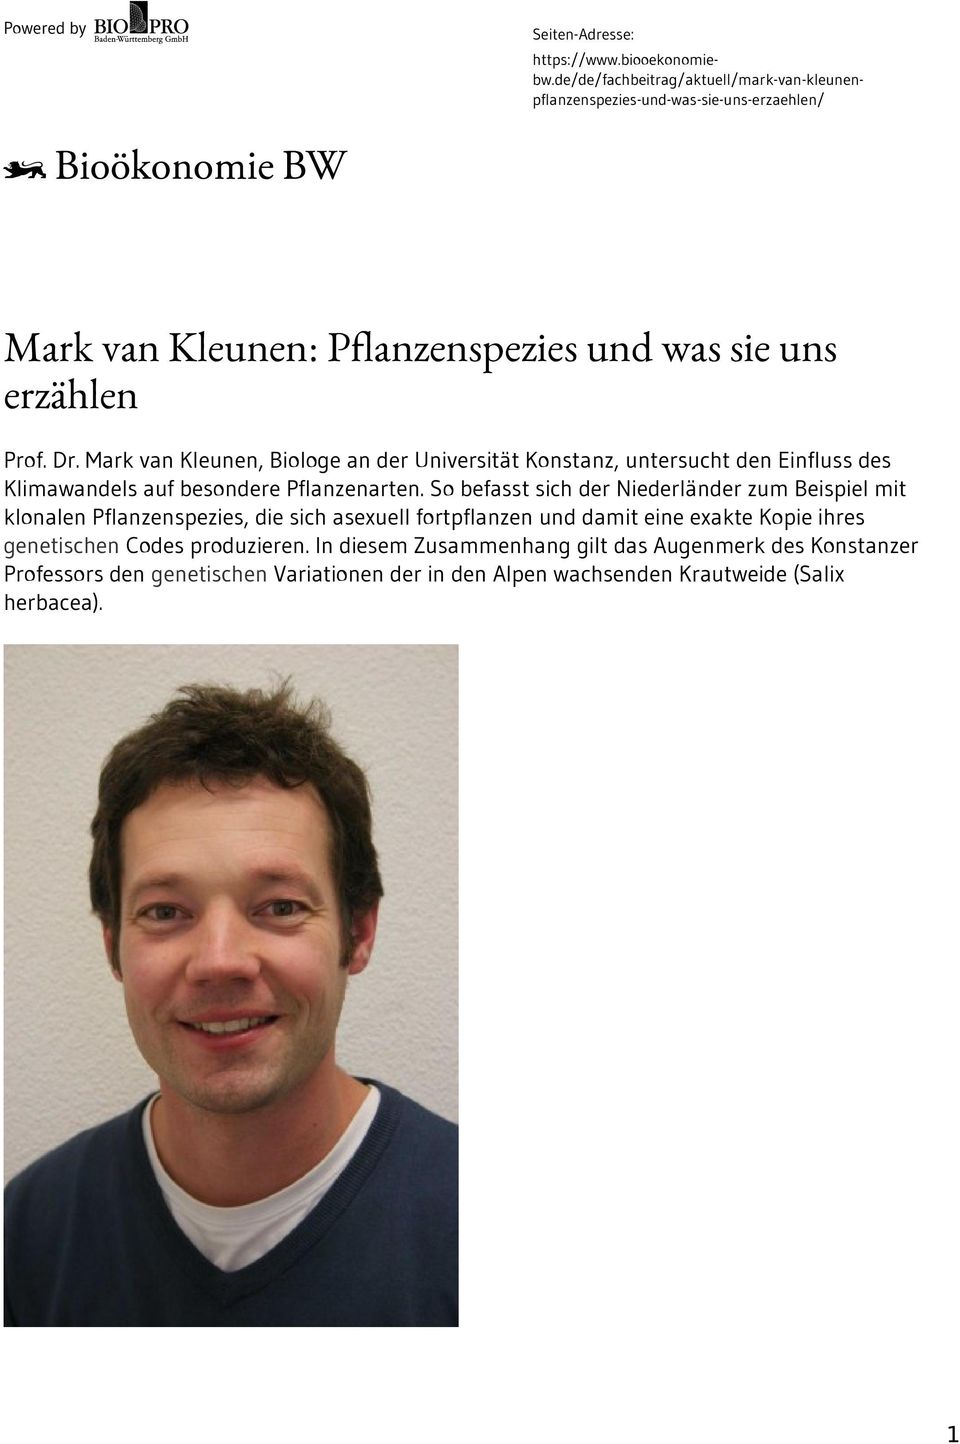 Mark van Kleunen, Biologe an der Universität Konstanz, untersucht den Einfluss des Klimawandels auf besondere Pflanzenarten.